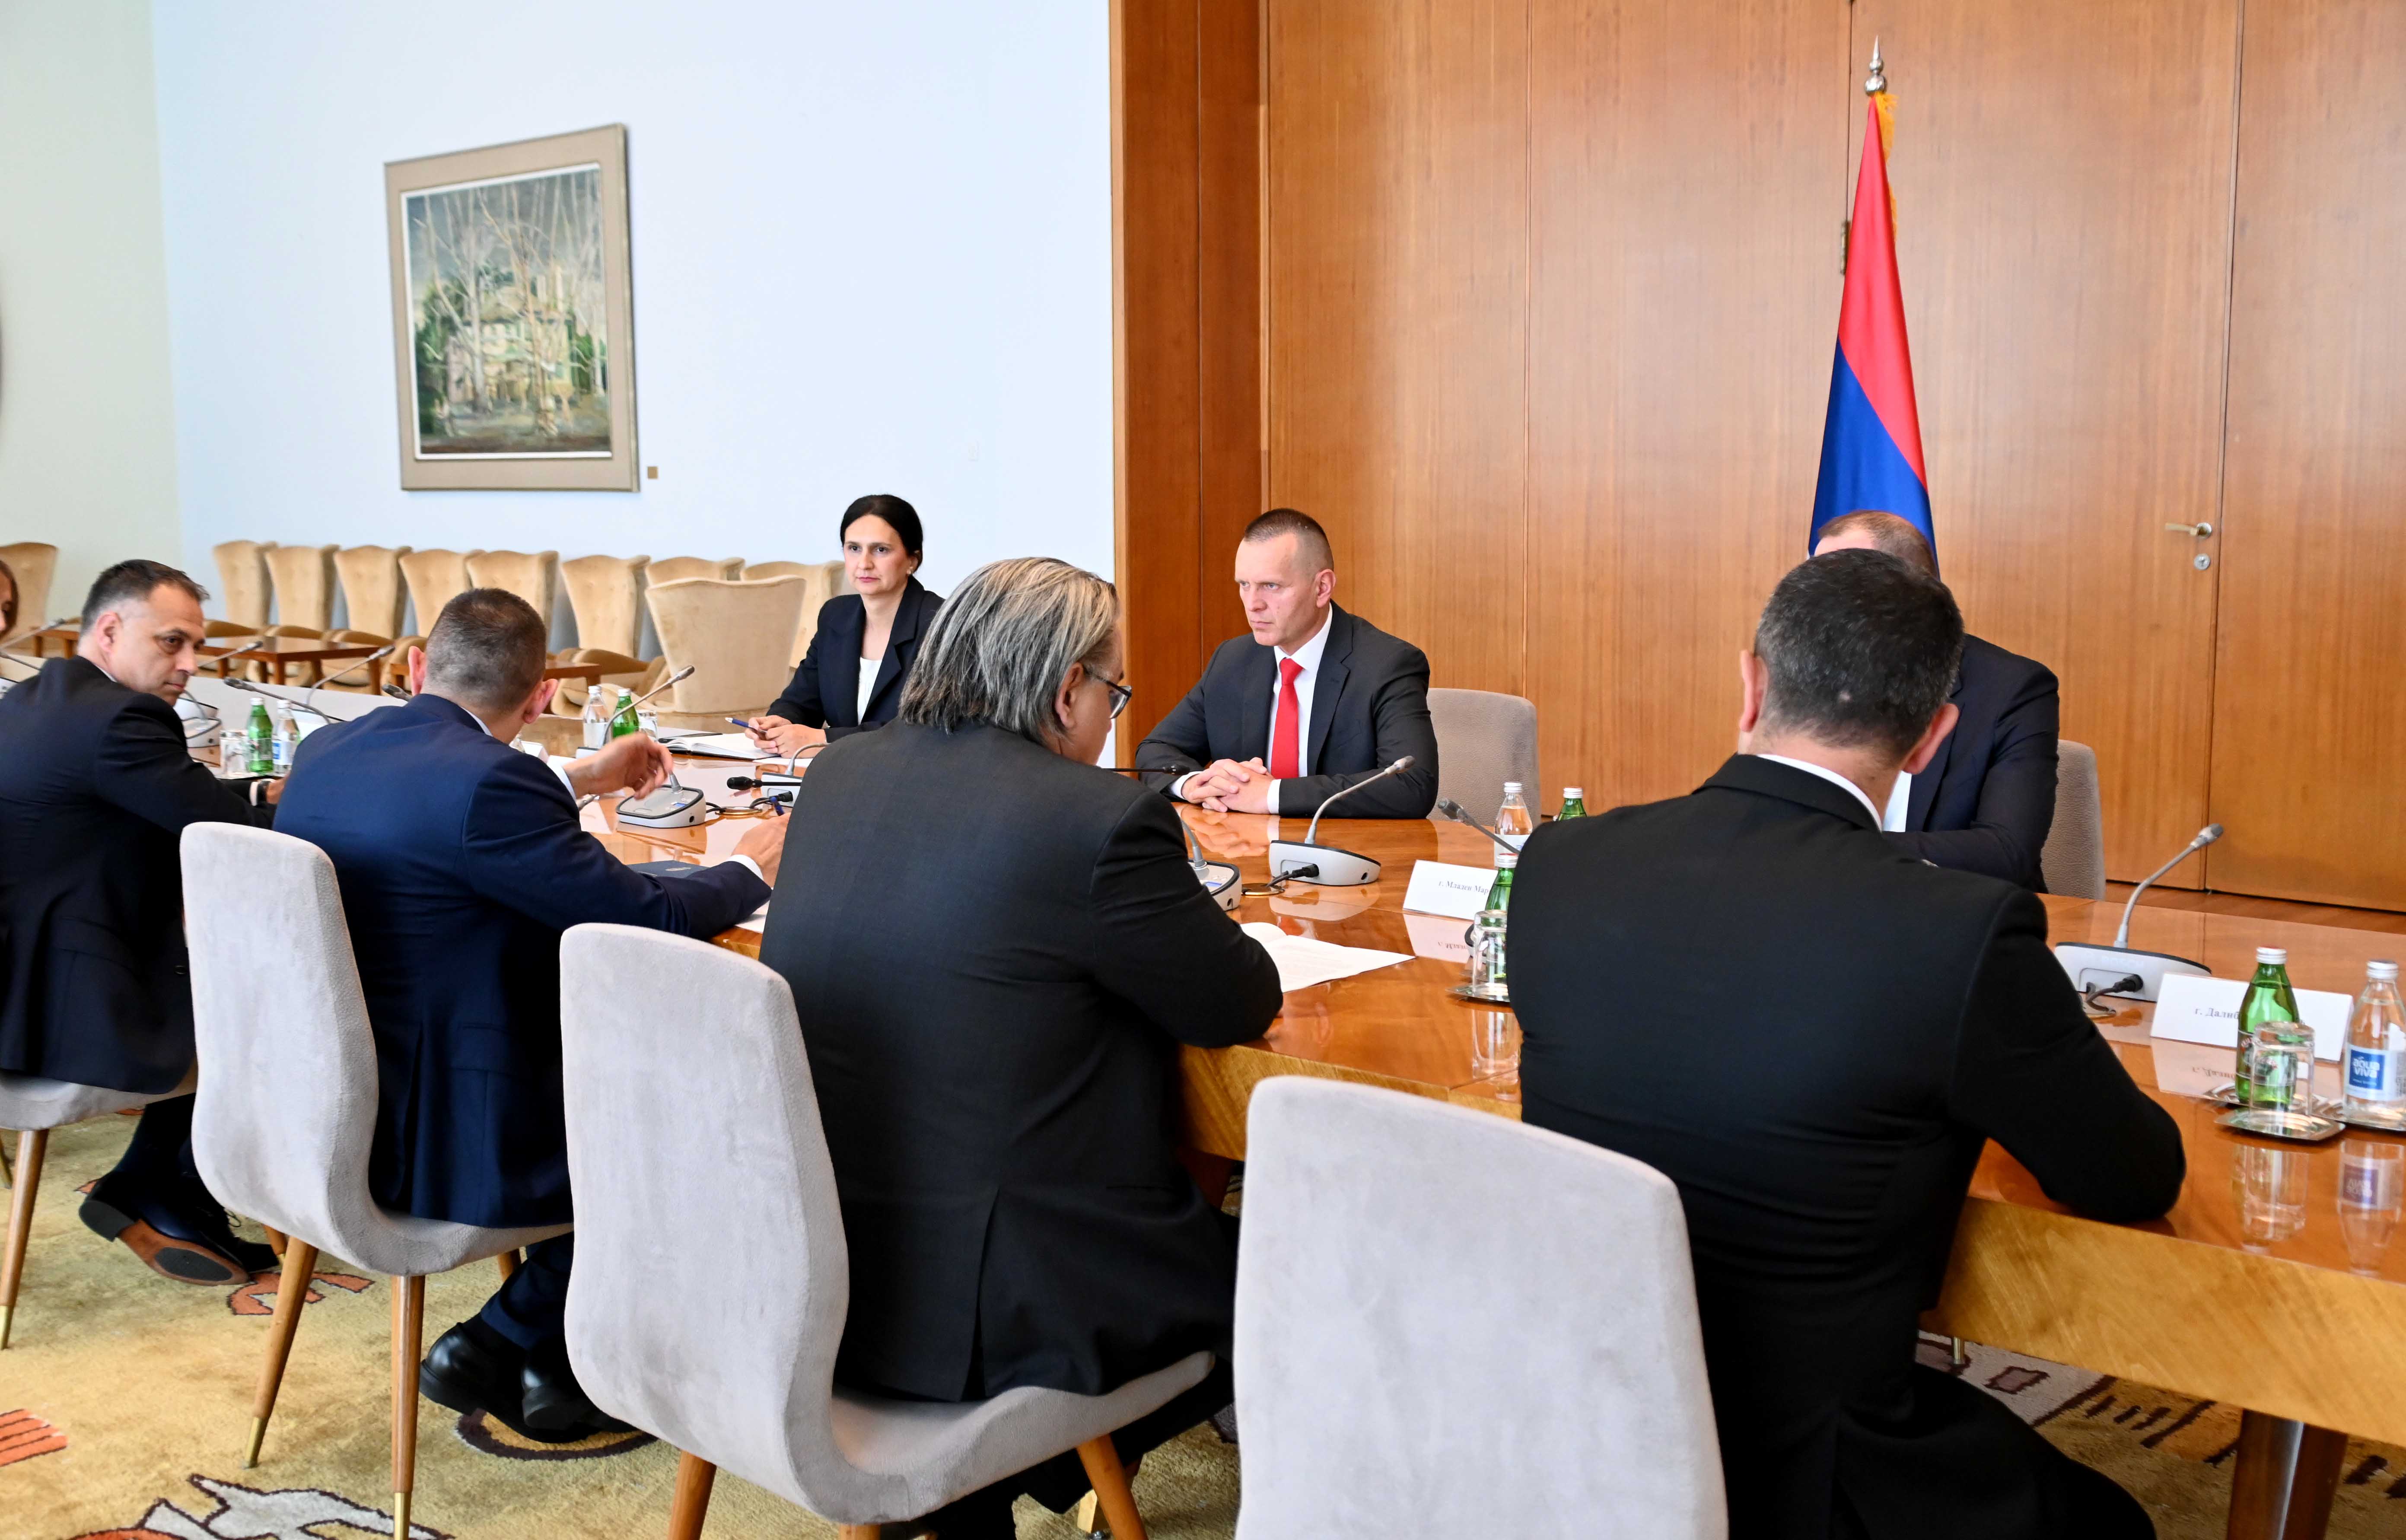 Ministri Vulin i Lukač razgovarali o dalјem unapređenju saradnje u oblasti unutrašnjih poslova